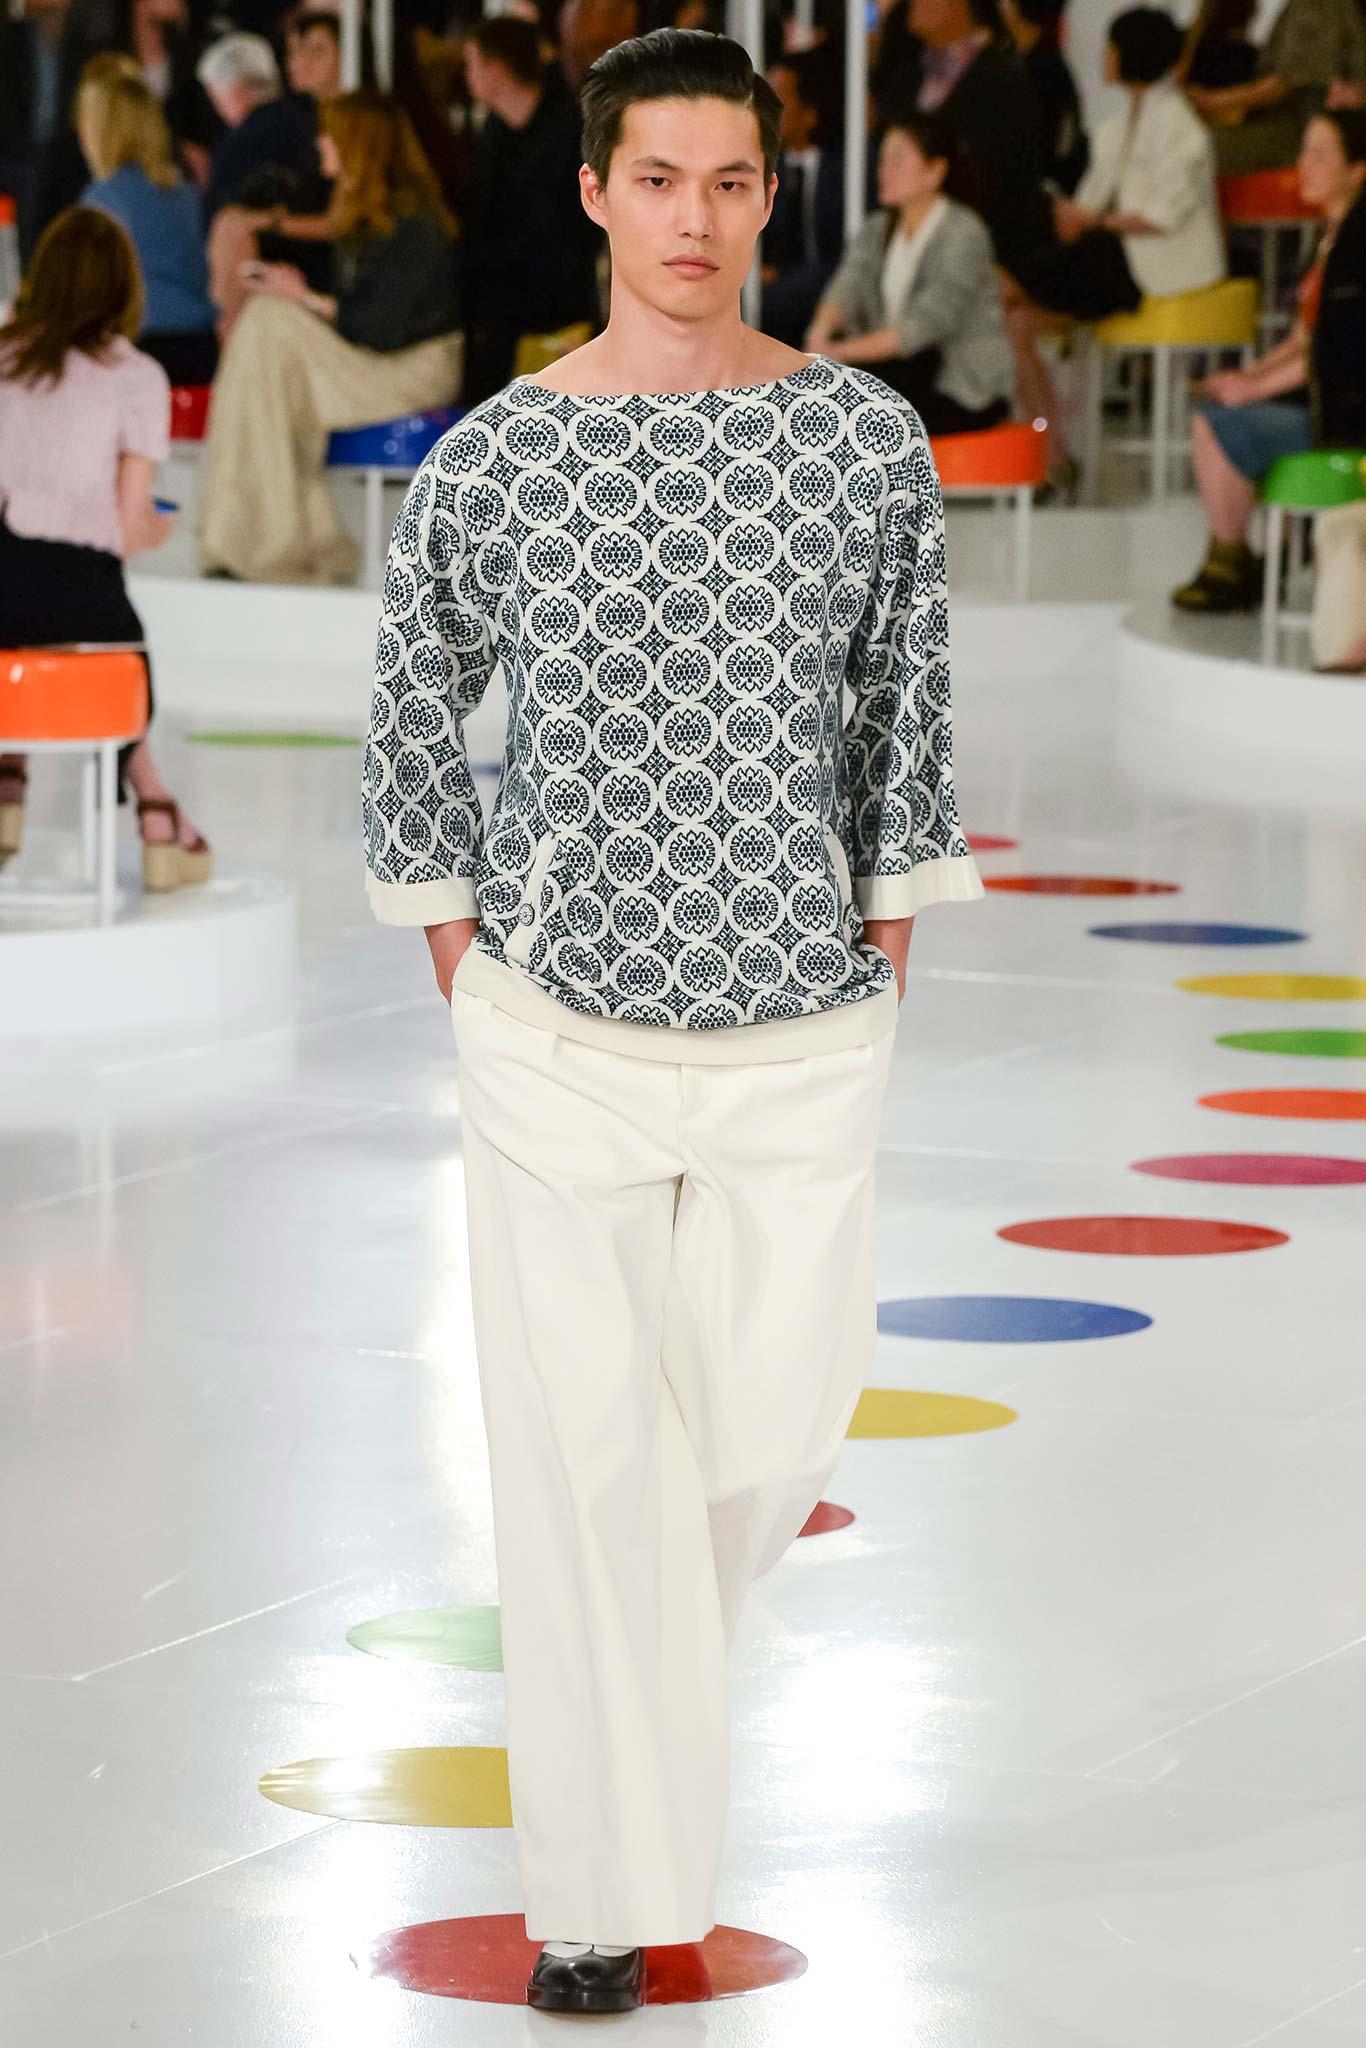 Charmant pull en cachemire ceinturé avec boutons du logo CC de Chanel de Paris / SEOUL 2016 Cruise Collection, 16C.
Taille 34 FR. Condit est en parfait état, sans aucun signe d'usure.